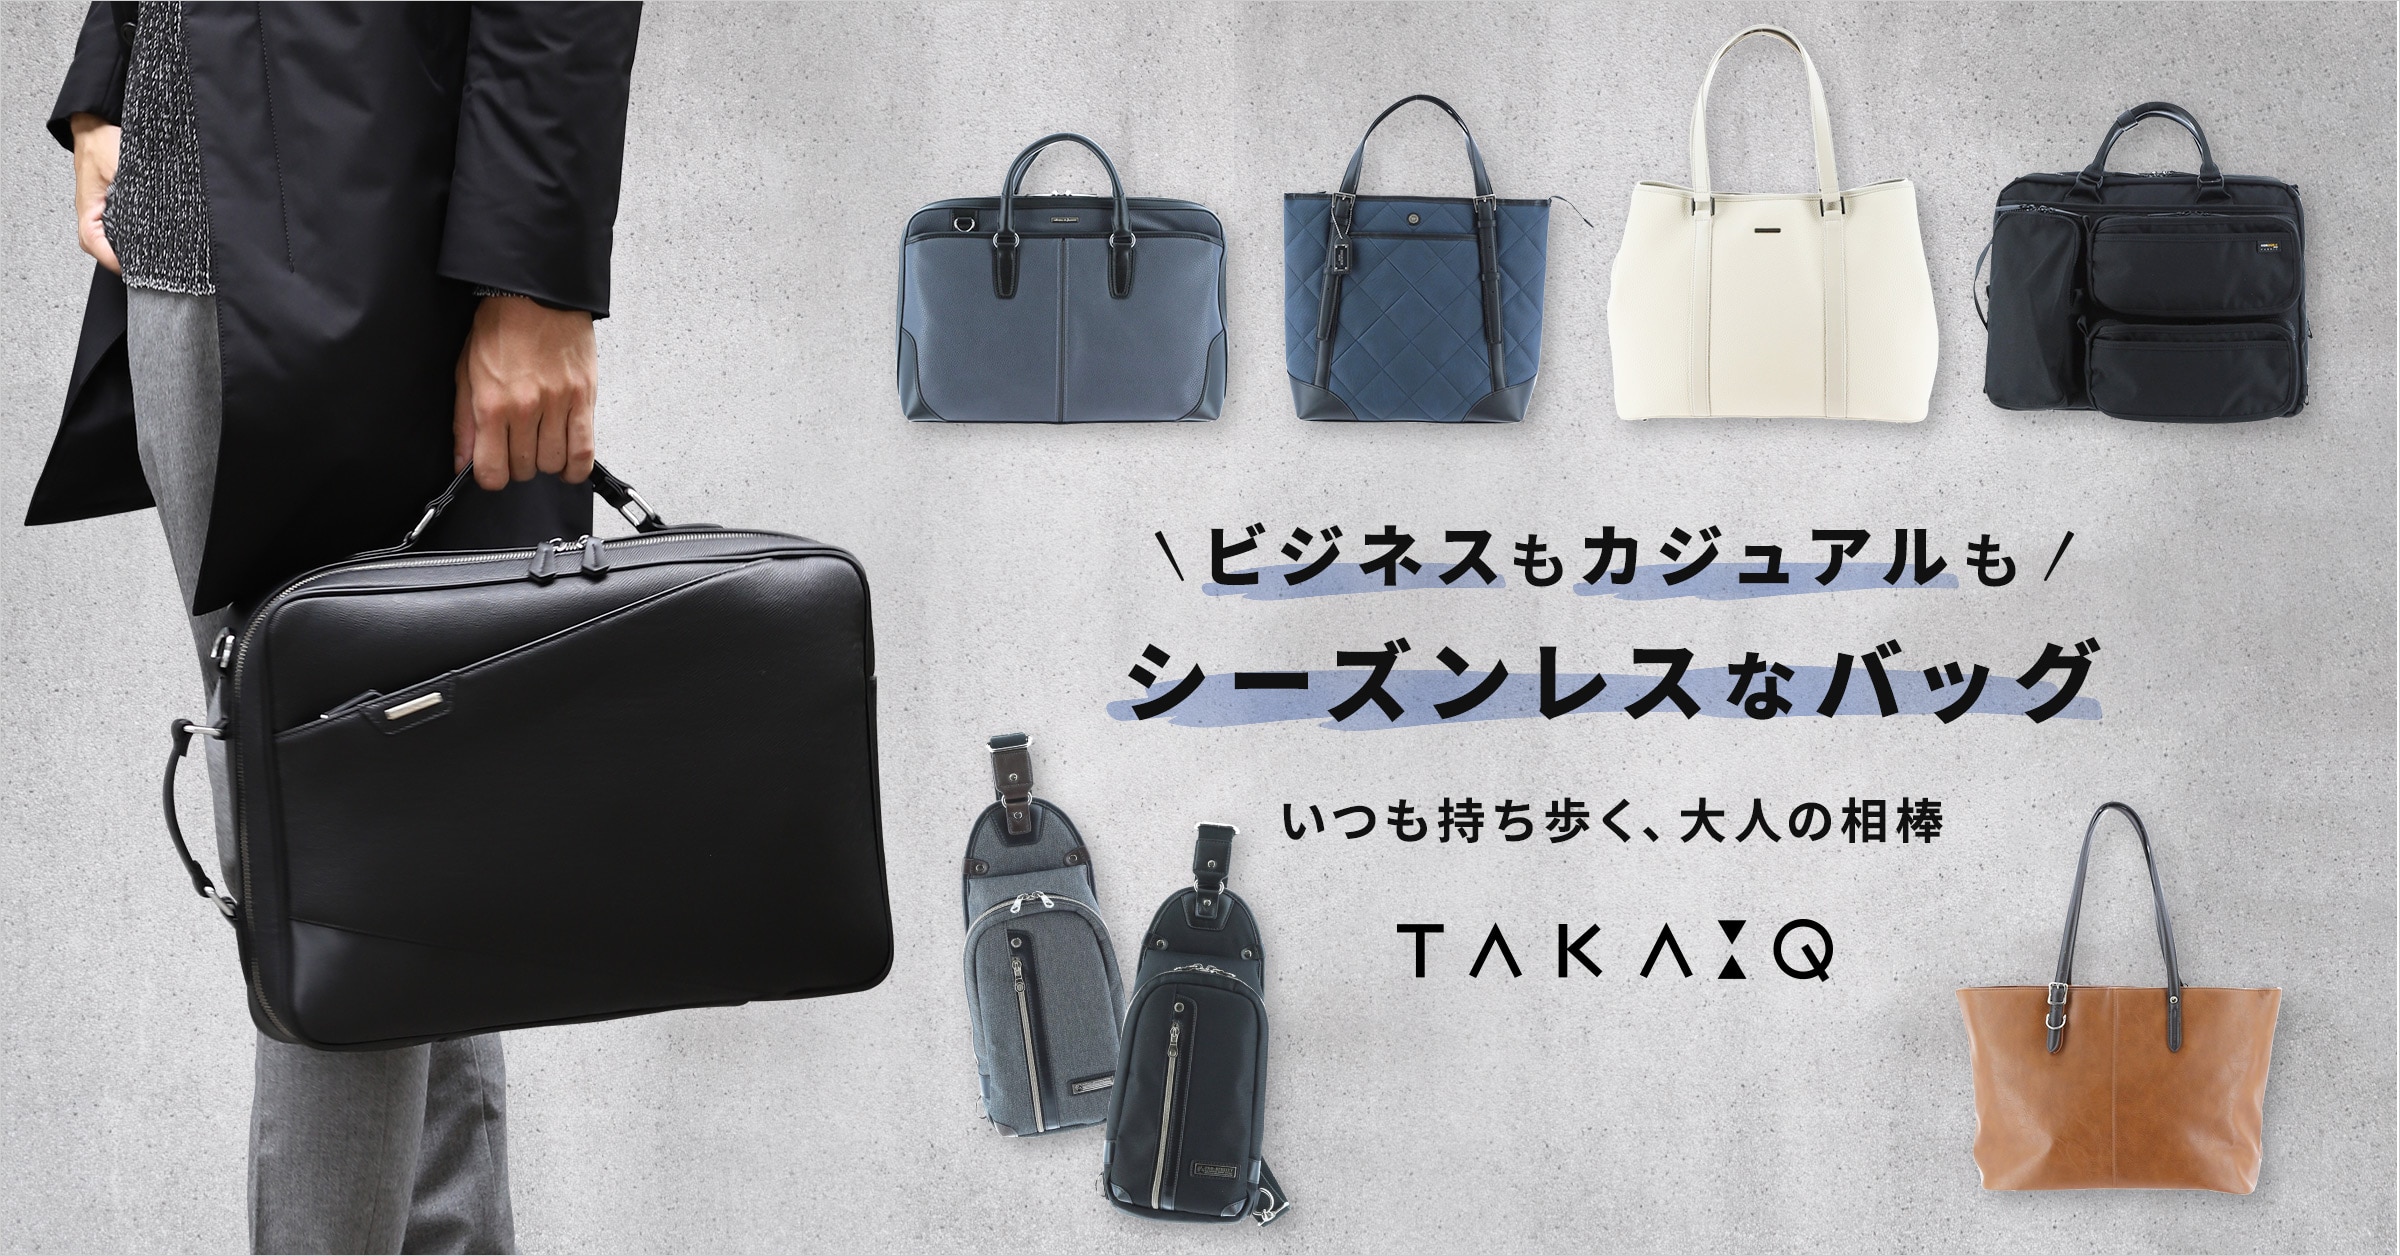 TAKA-Q(タカキュー) ビジネスもカジュアルも シーズンレスなバッグ